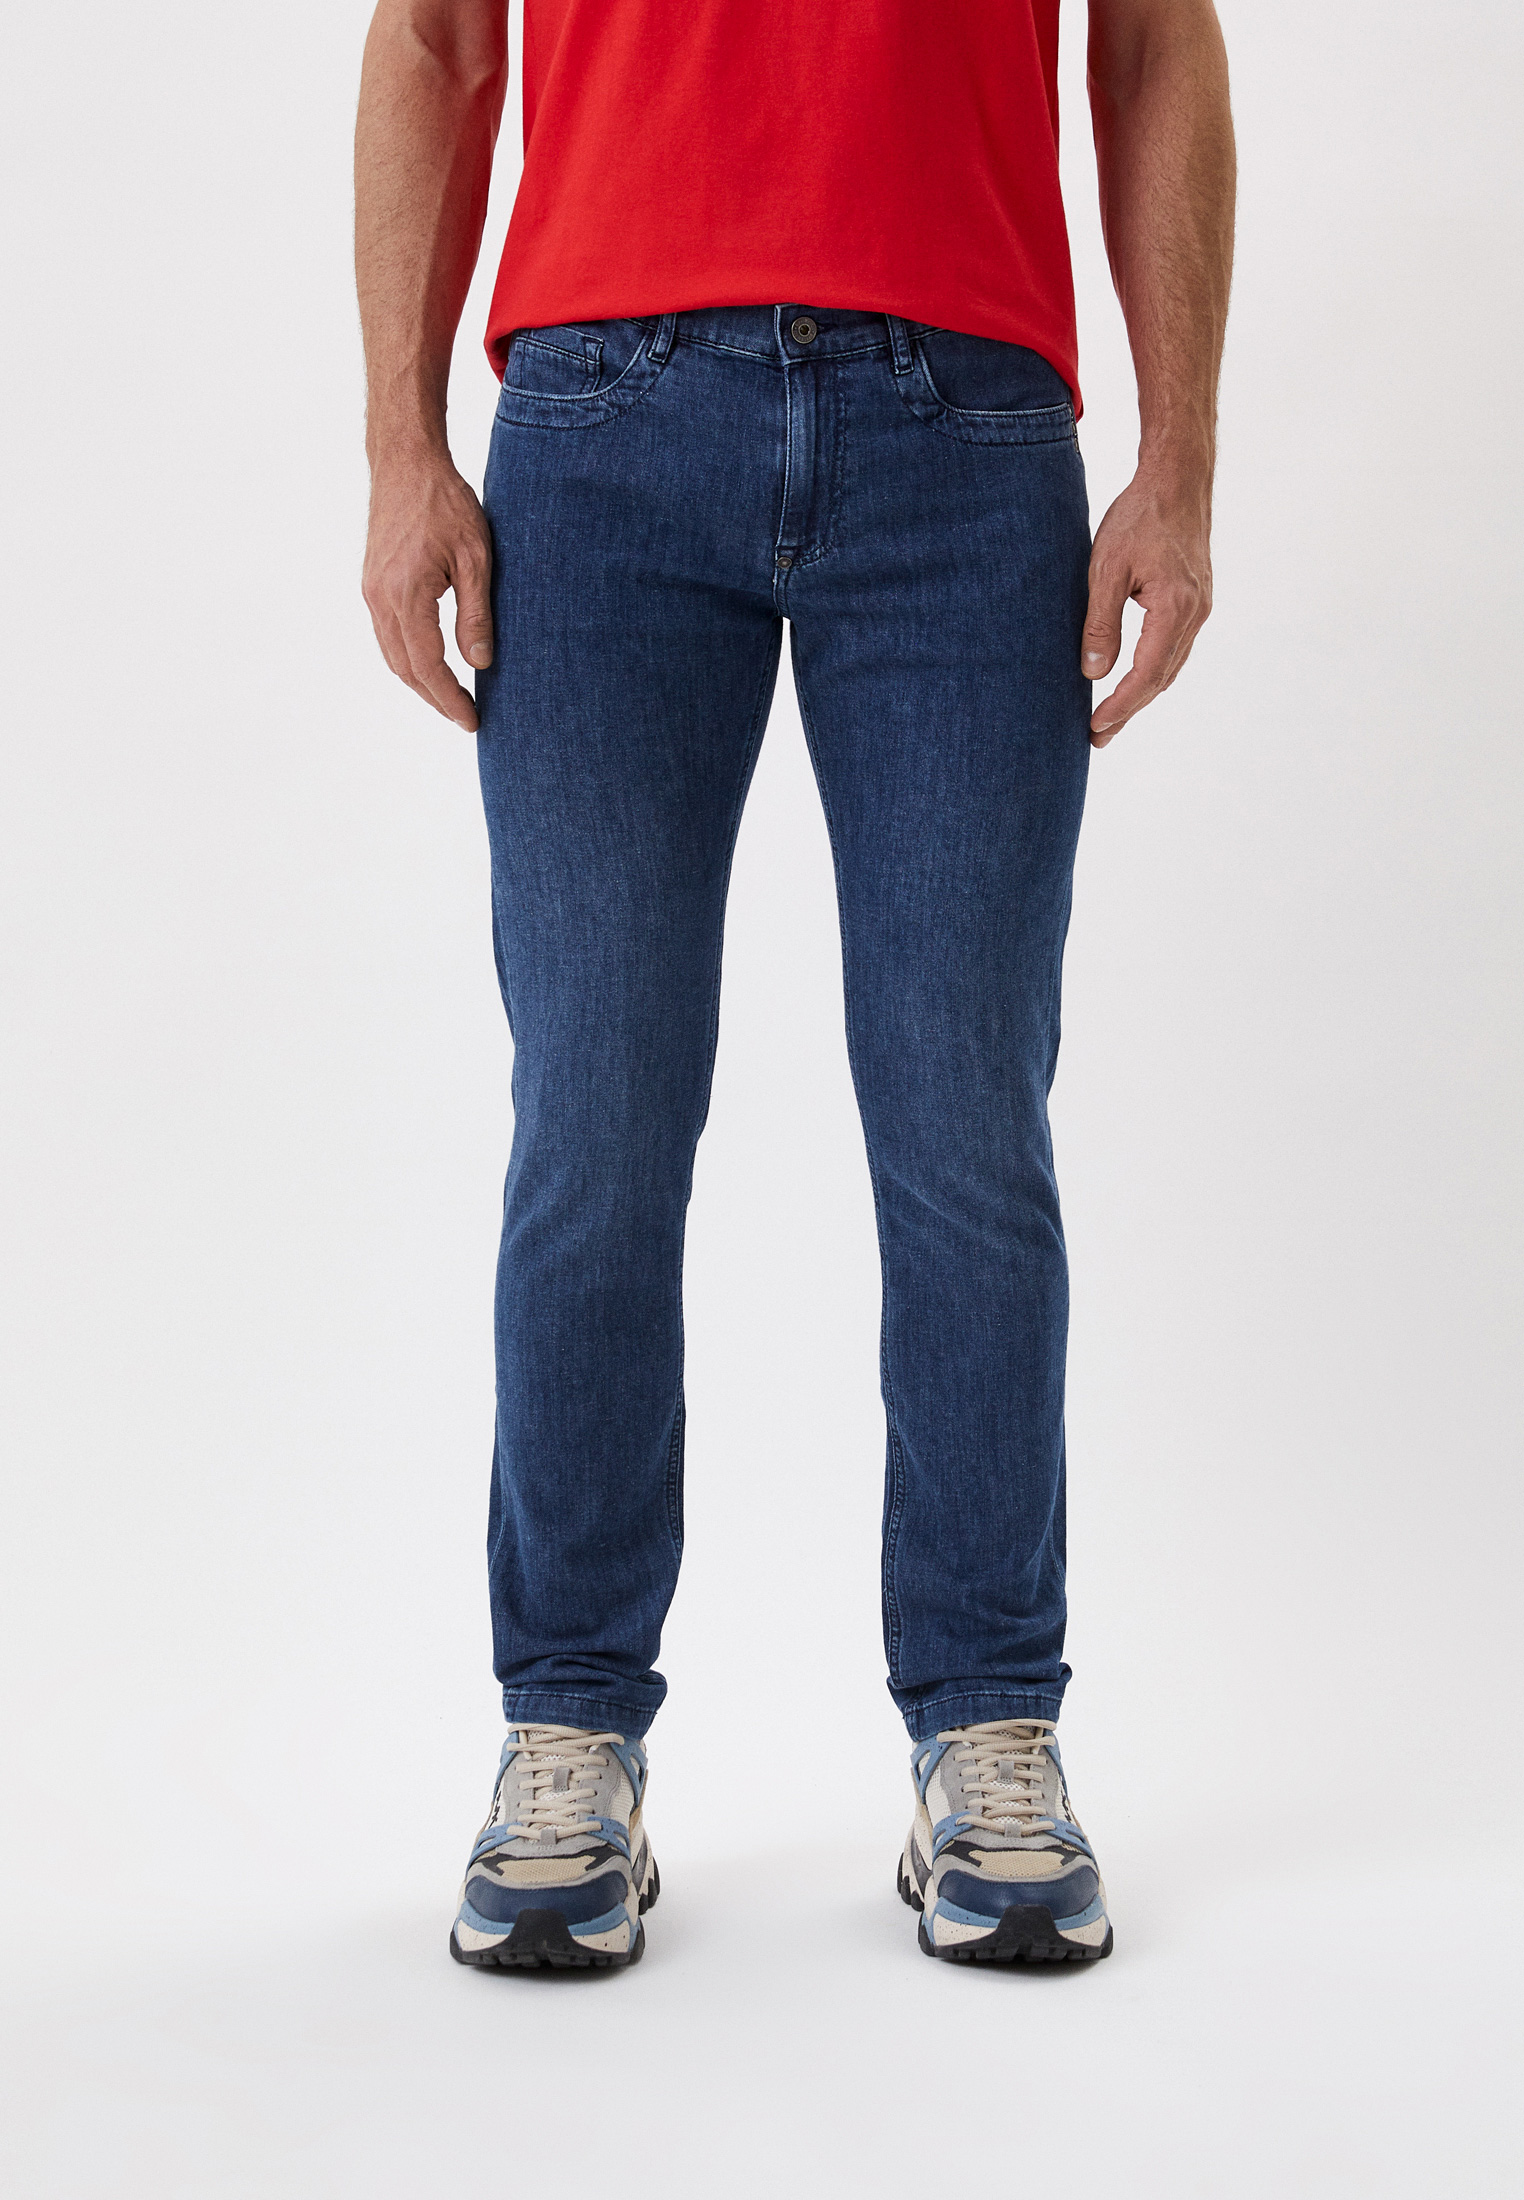 Мужские прямые джинсы Bikkembergs (Биккембергс) CQ10188S3780: изображение 5